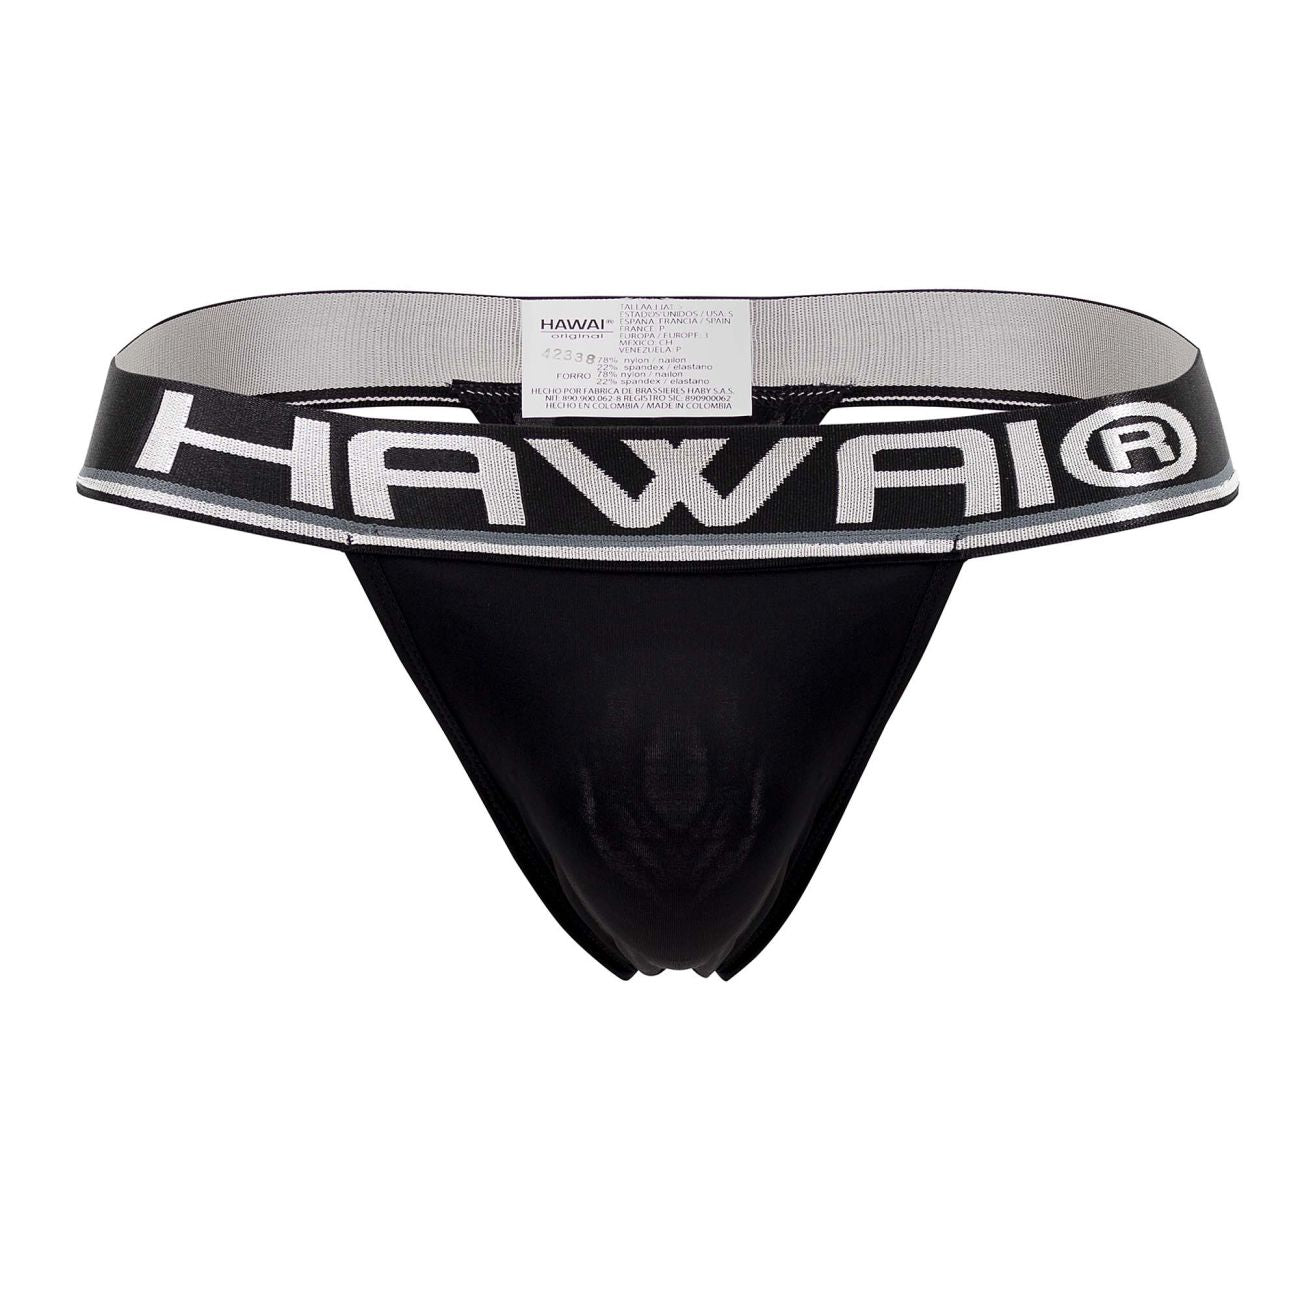 HAWAI Microfiber Thongs